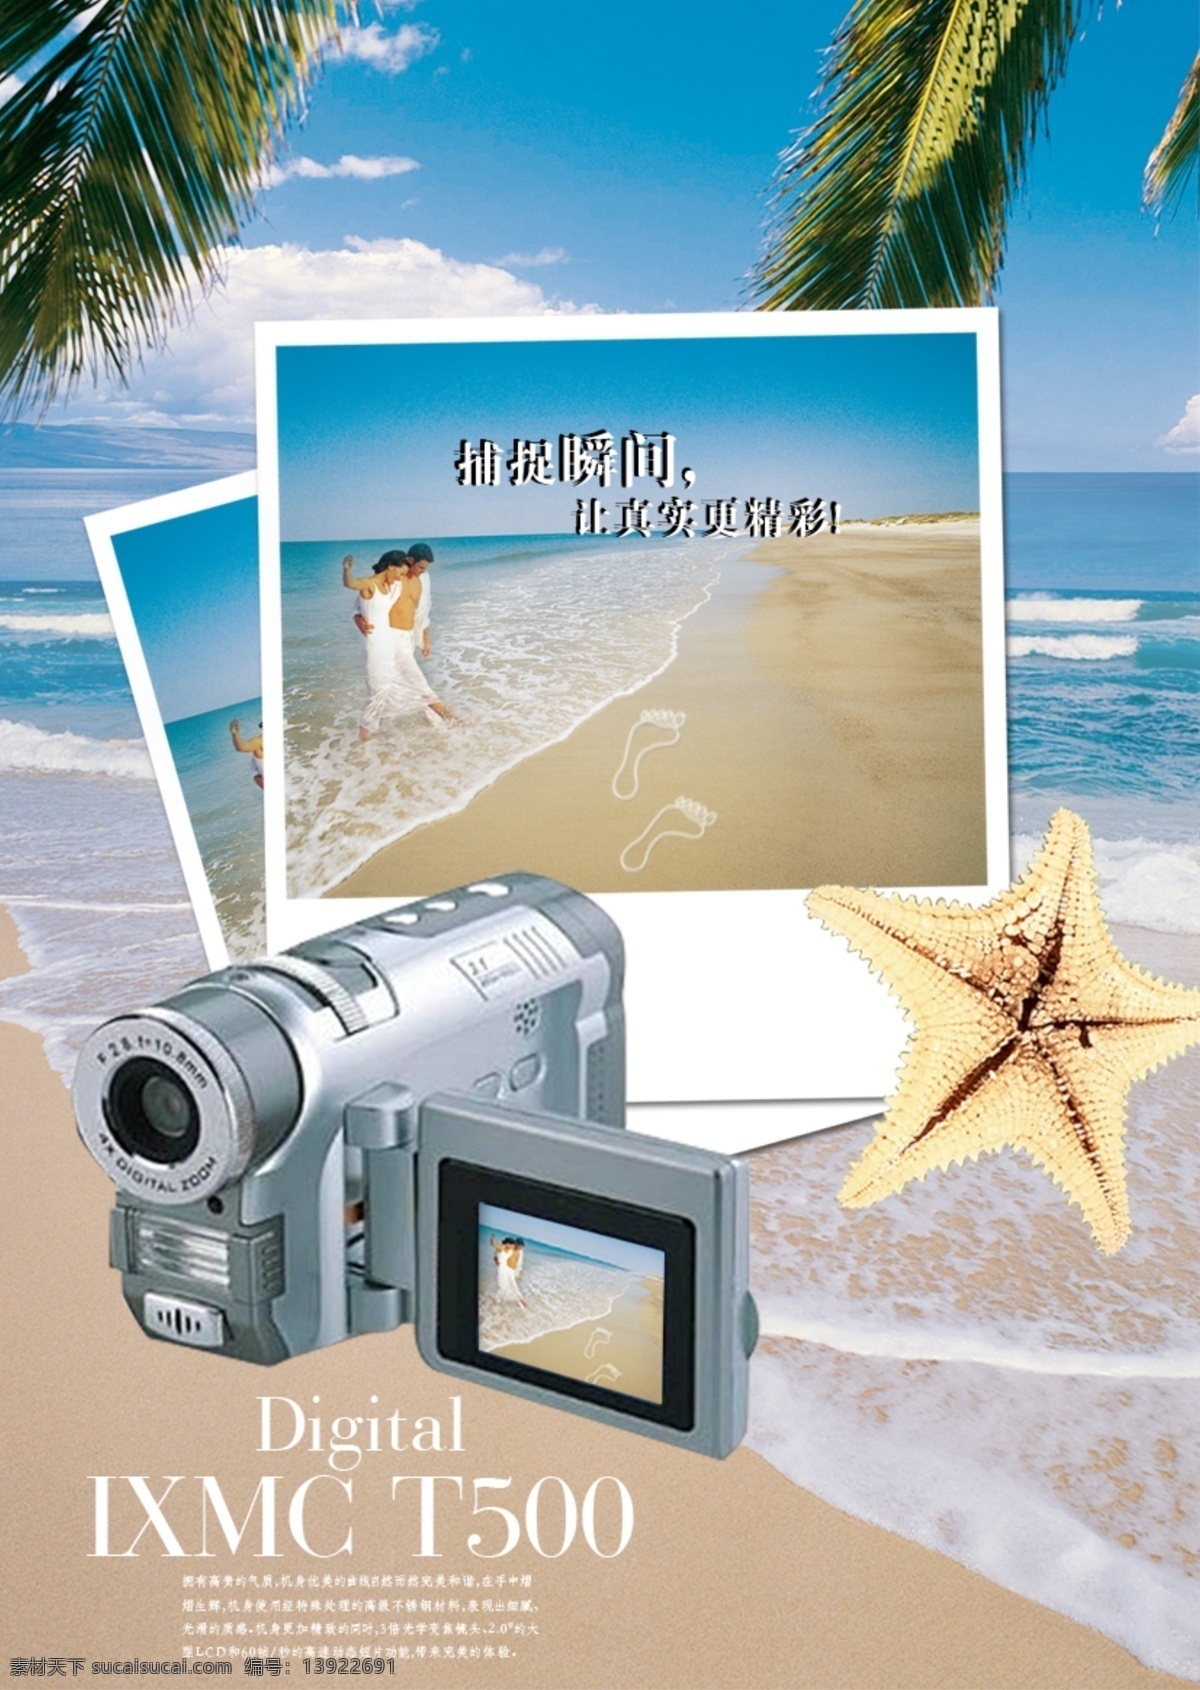 广告设计模板 摄像机 源文件 照相机 广告 模板下载 摄像机广告 digital ixmc t500 海报 文件 psd源文件